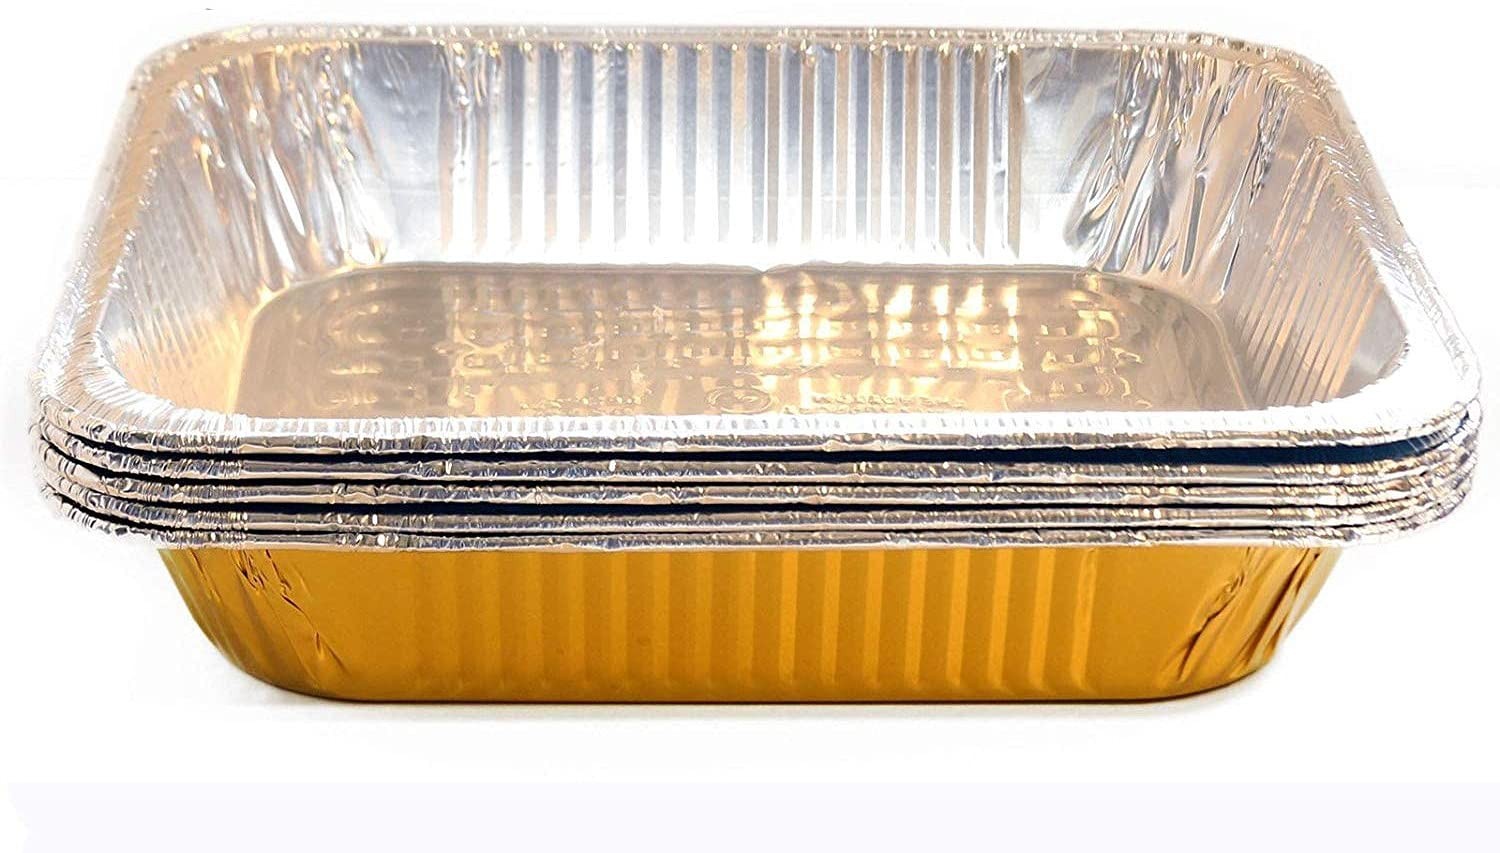 TigerChef Gold Disposable Half Size Aluminum Foil Steam Table Pans